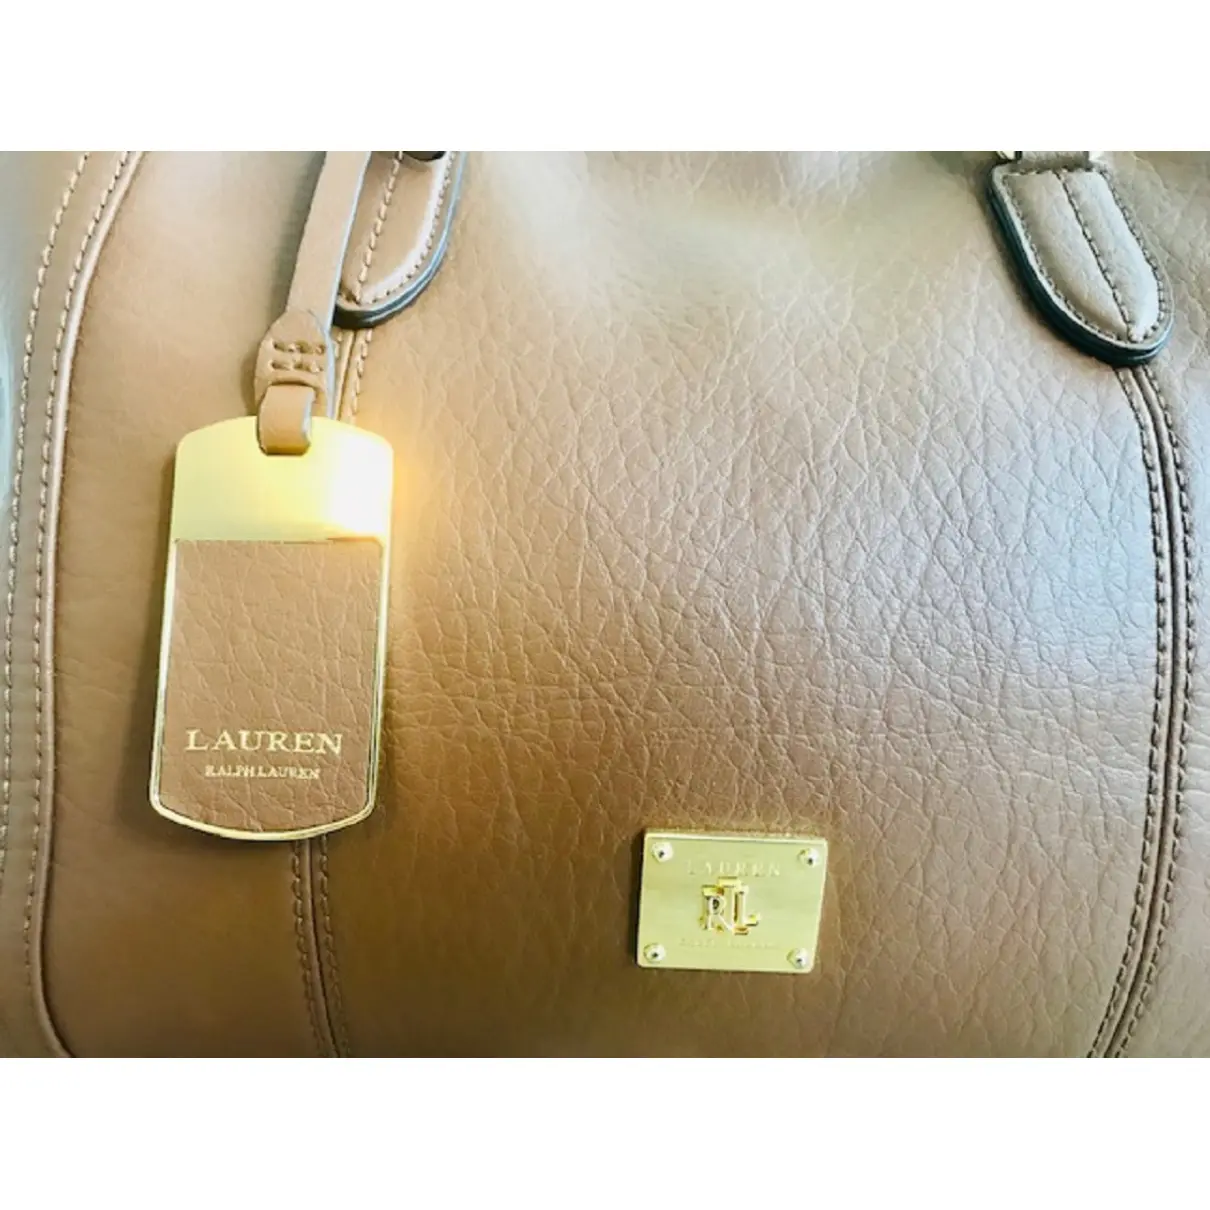 Luxury Lauren Ralph Lauren Handbags Women